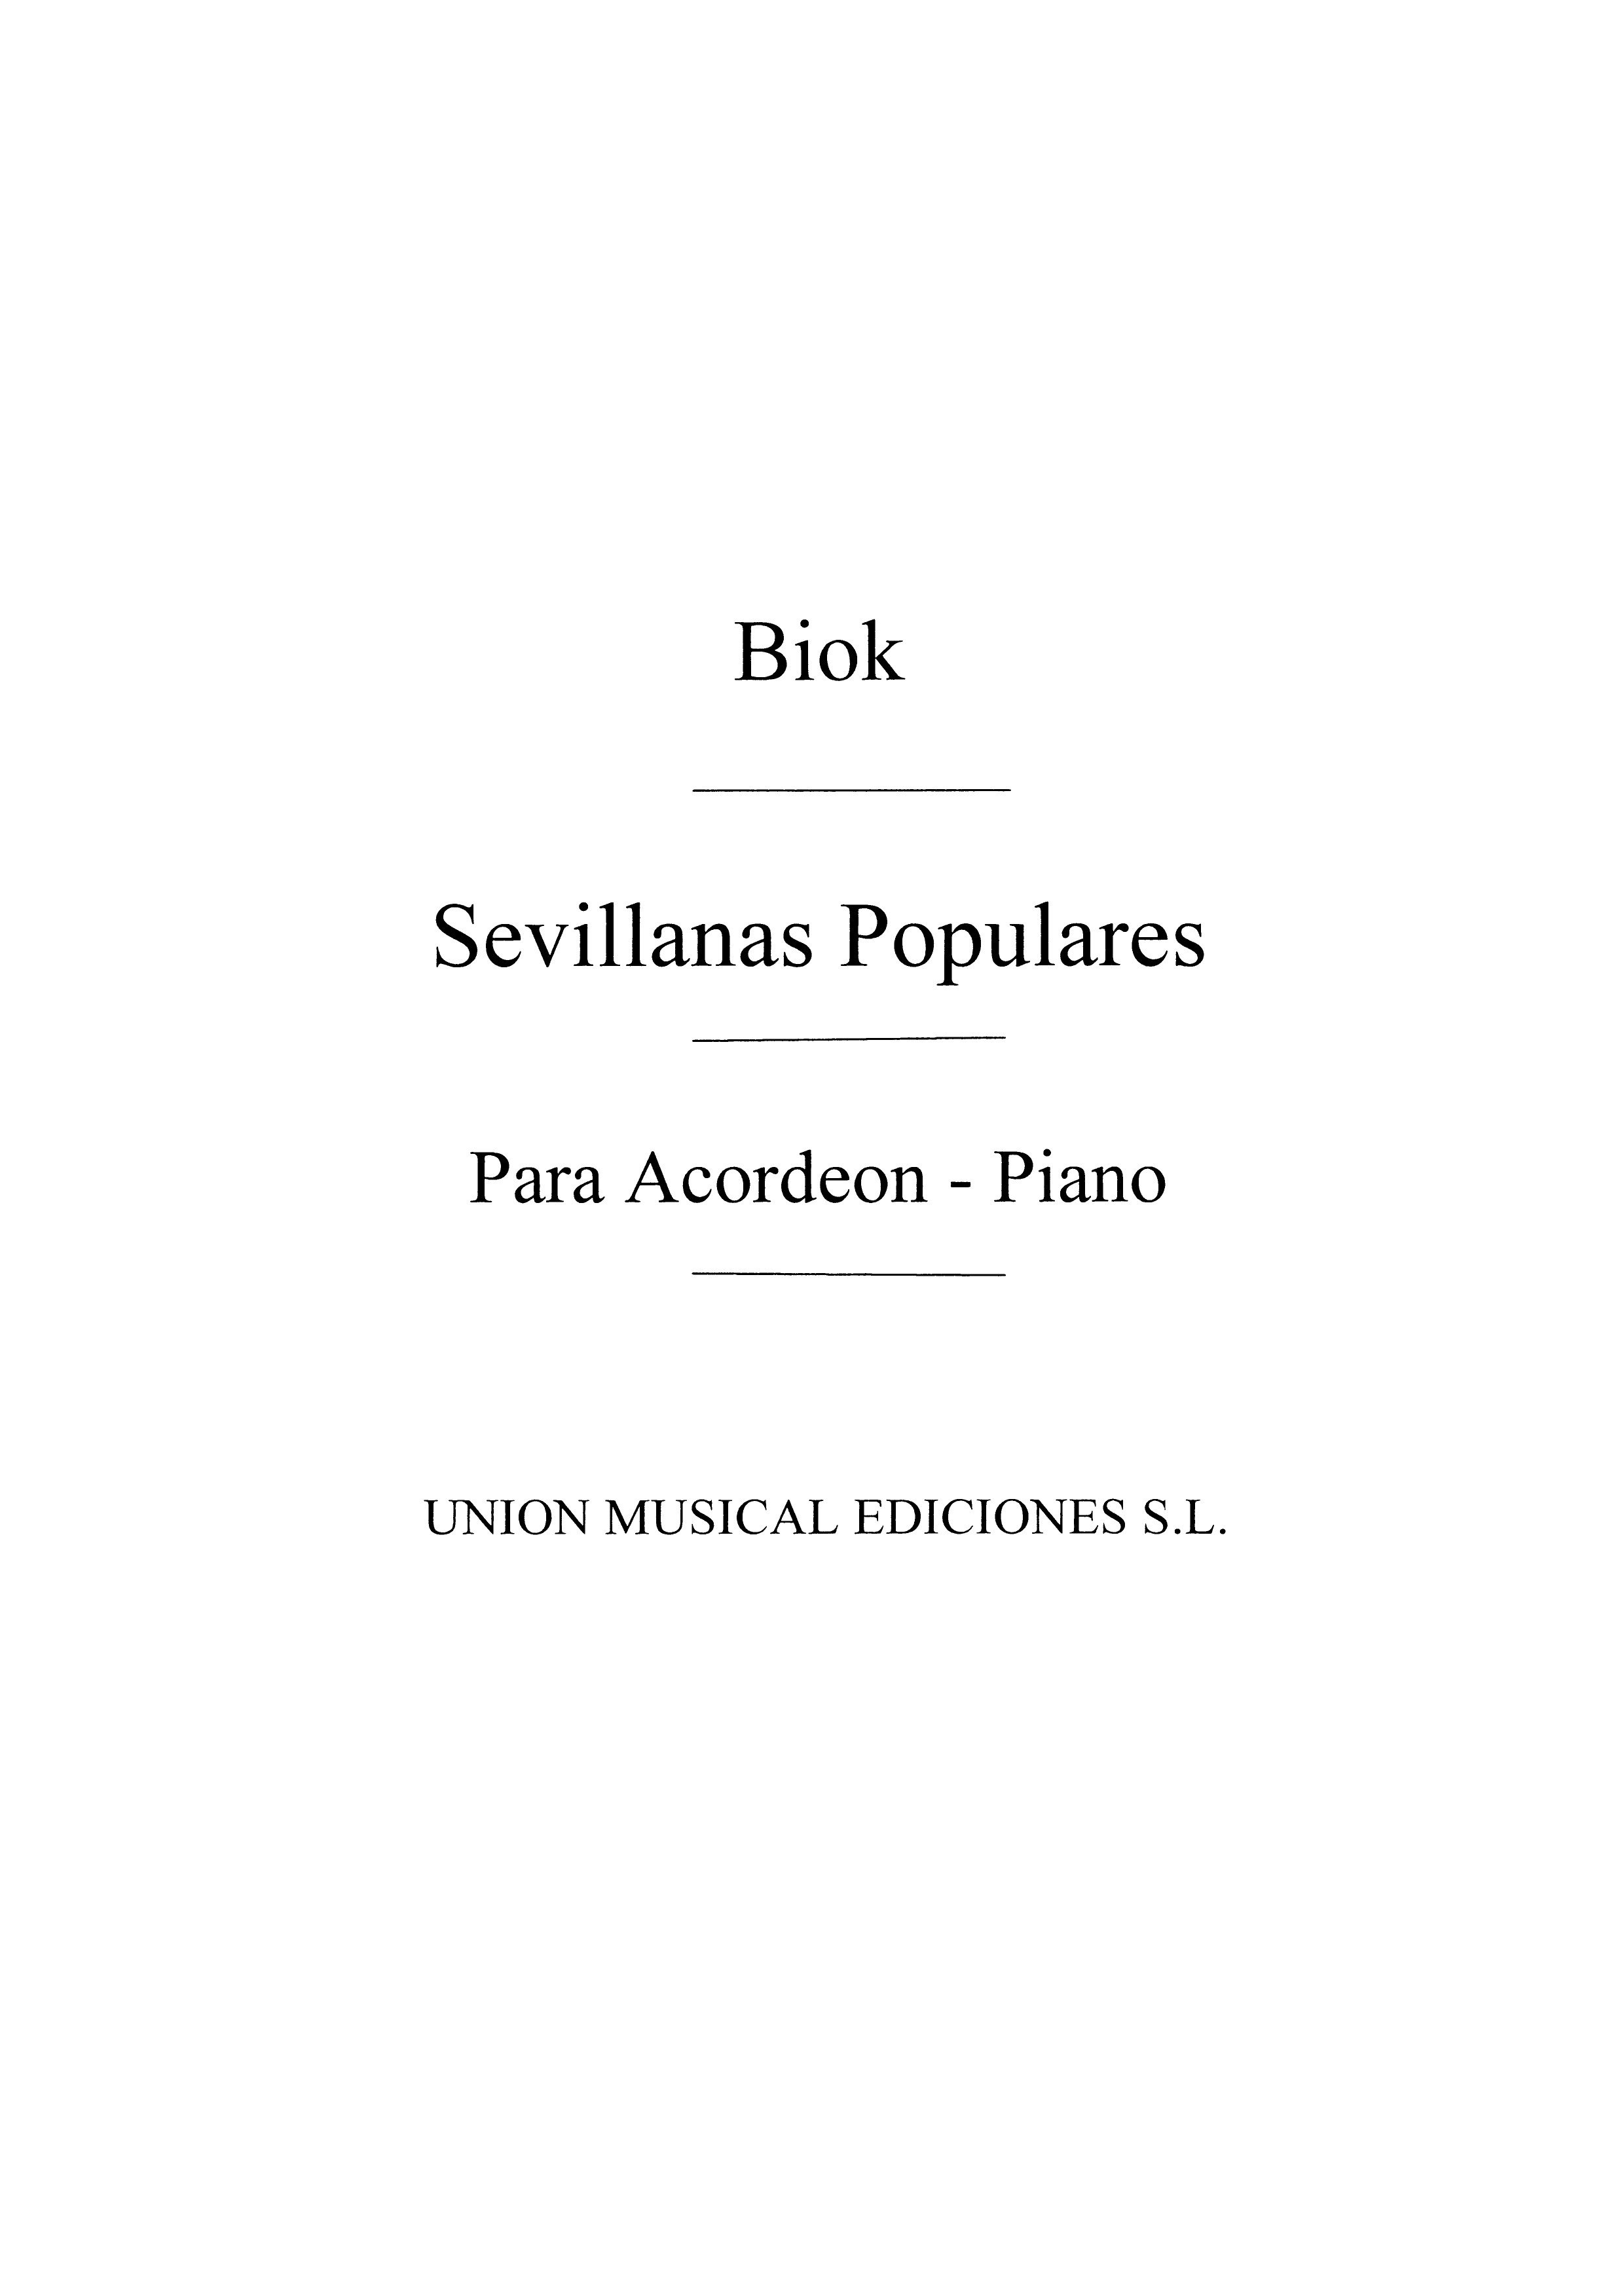 Biok: Sevillanas Populares for Accordion